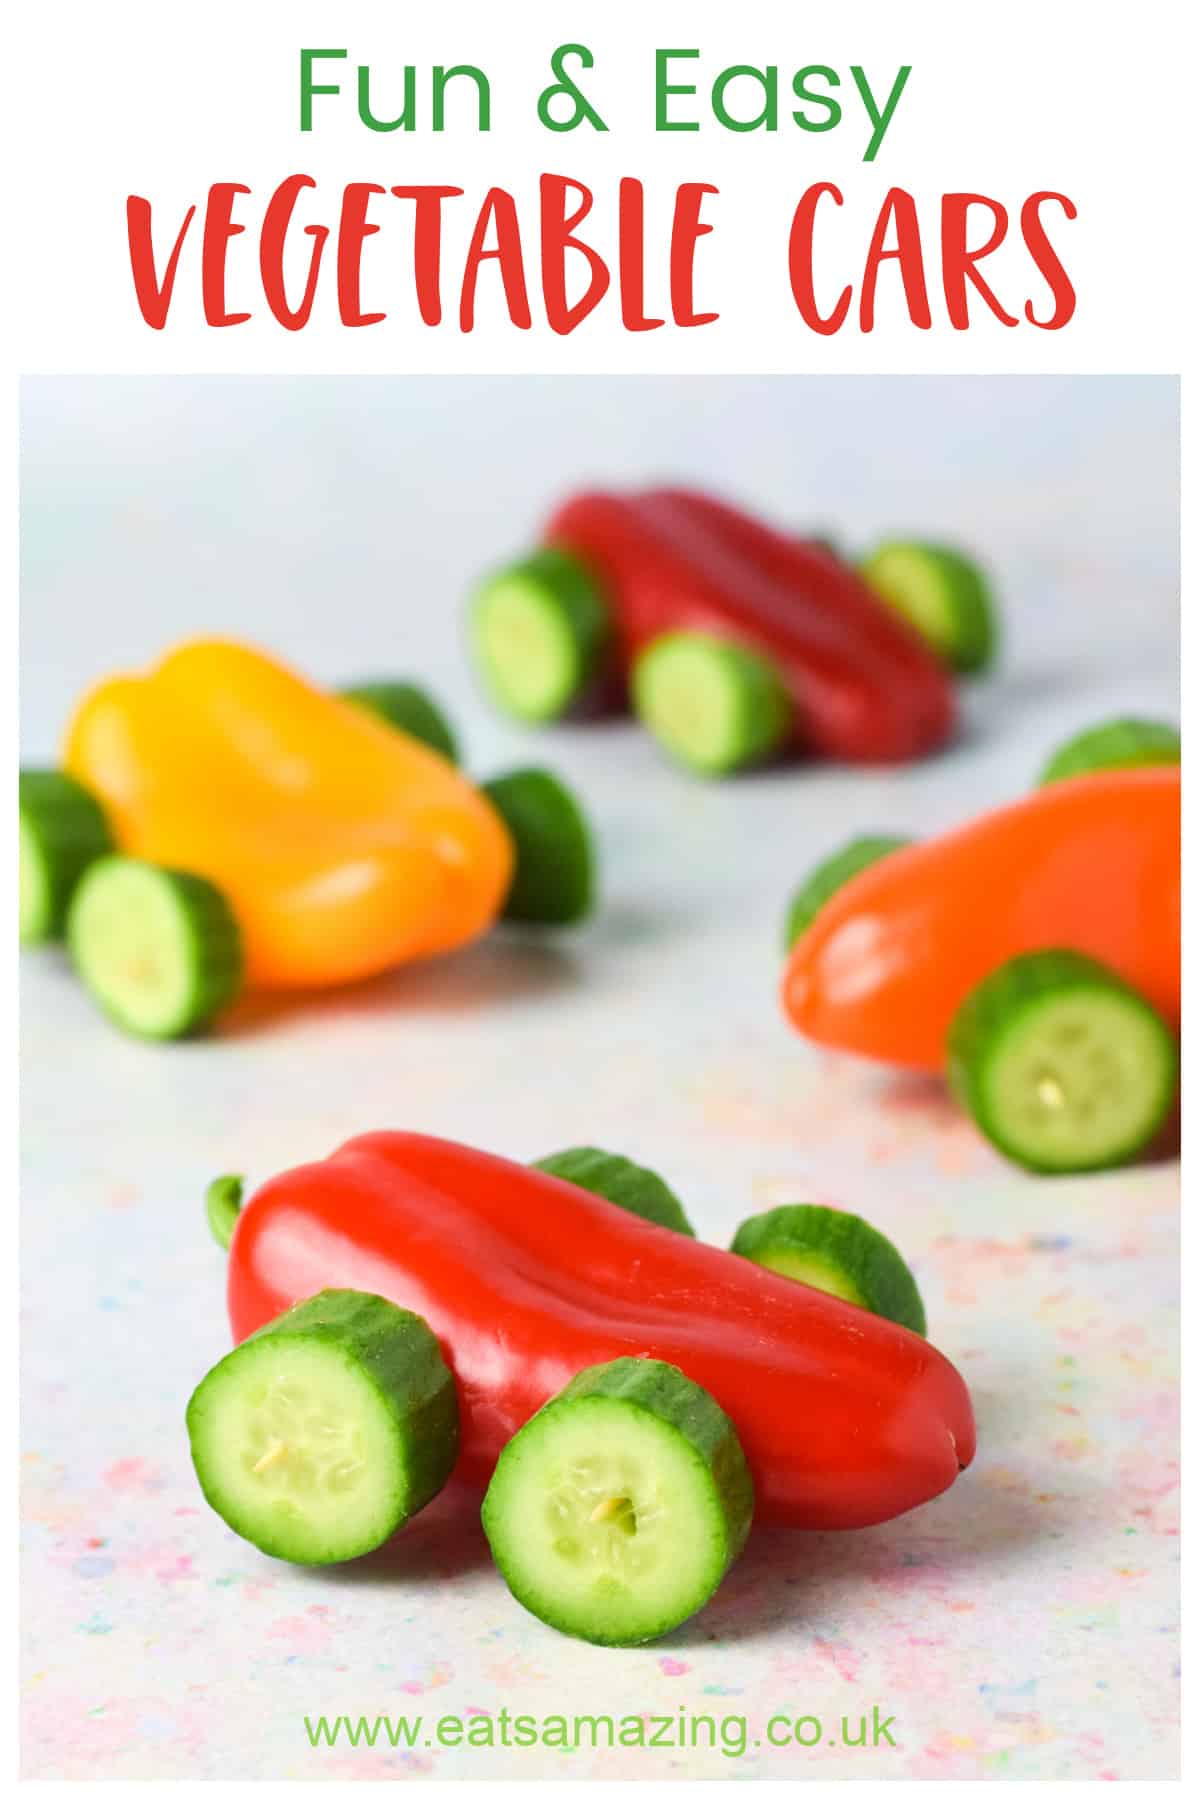 Receta divertida y saludable de carros de vegetales: excelente para comidas de fiestas temáticas de automóviles o refrigerios escolares para niños